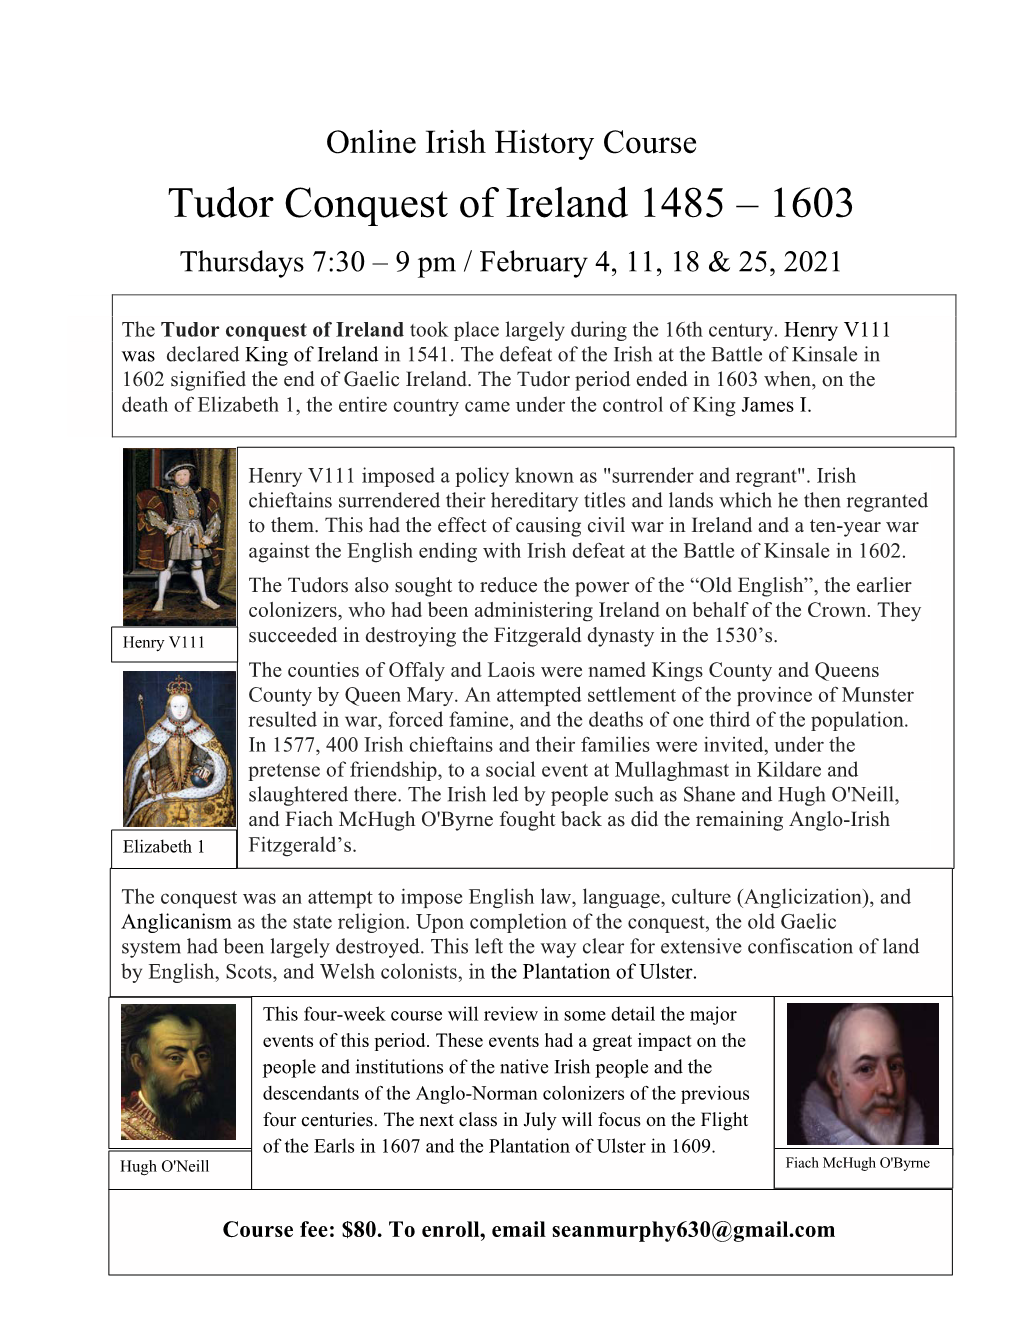 Tudor Conquest of Ireland 1485 – 1603 Thursdays 7:30 – 9 Pm / February 4, 11, 18 & 25, 2021